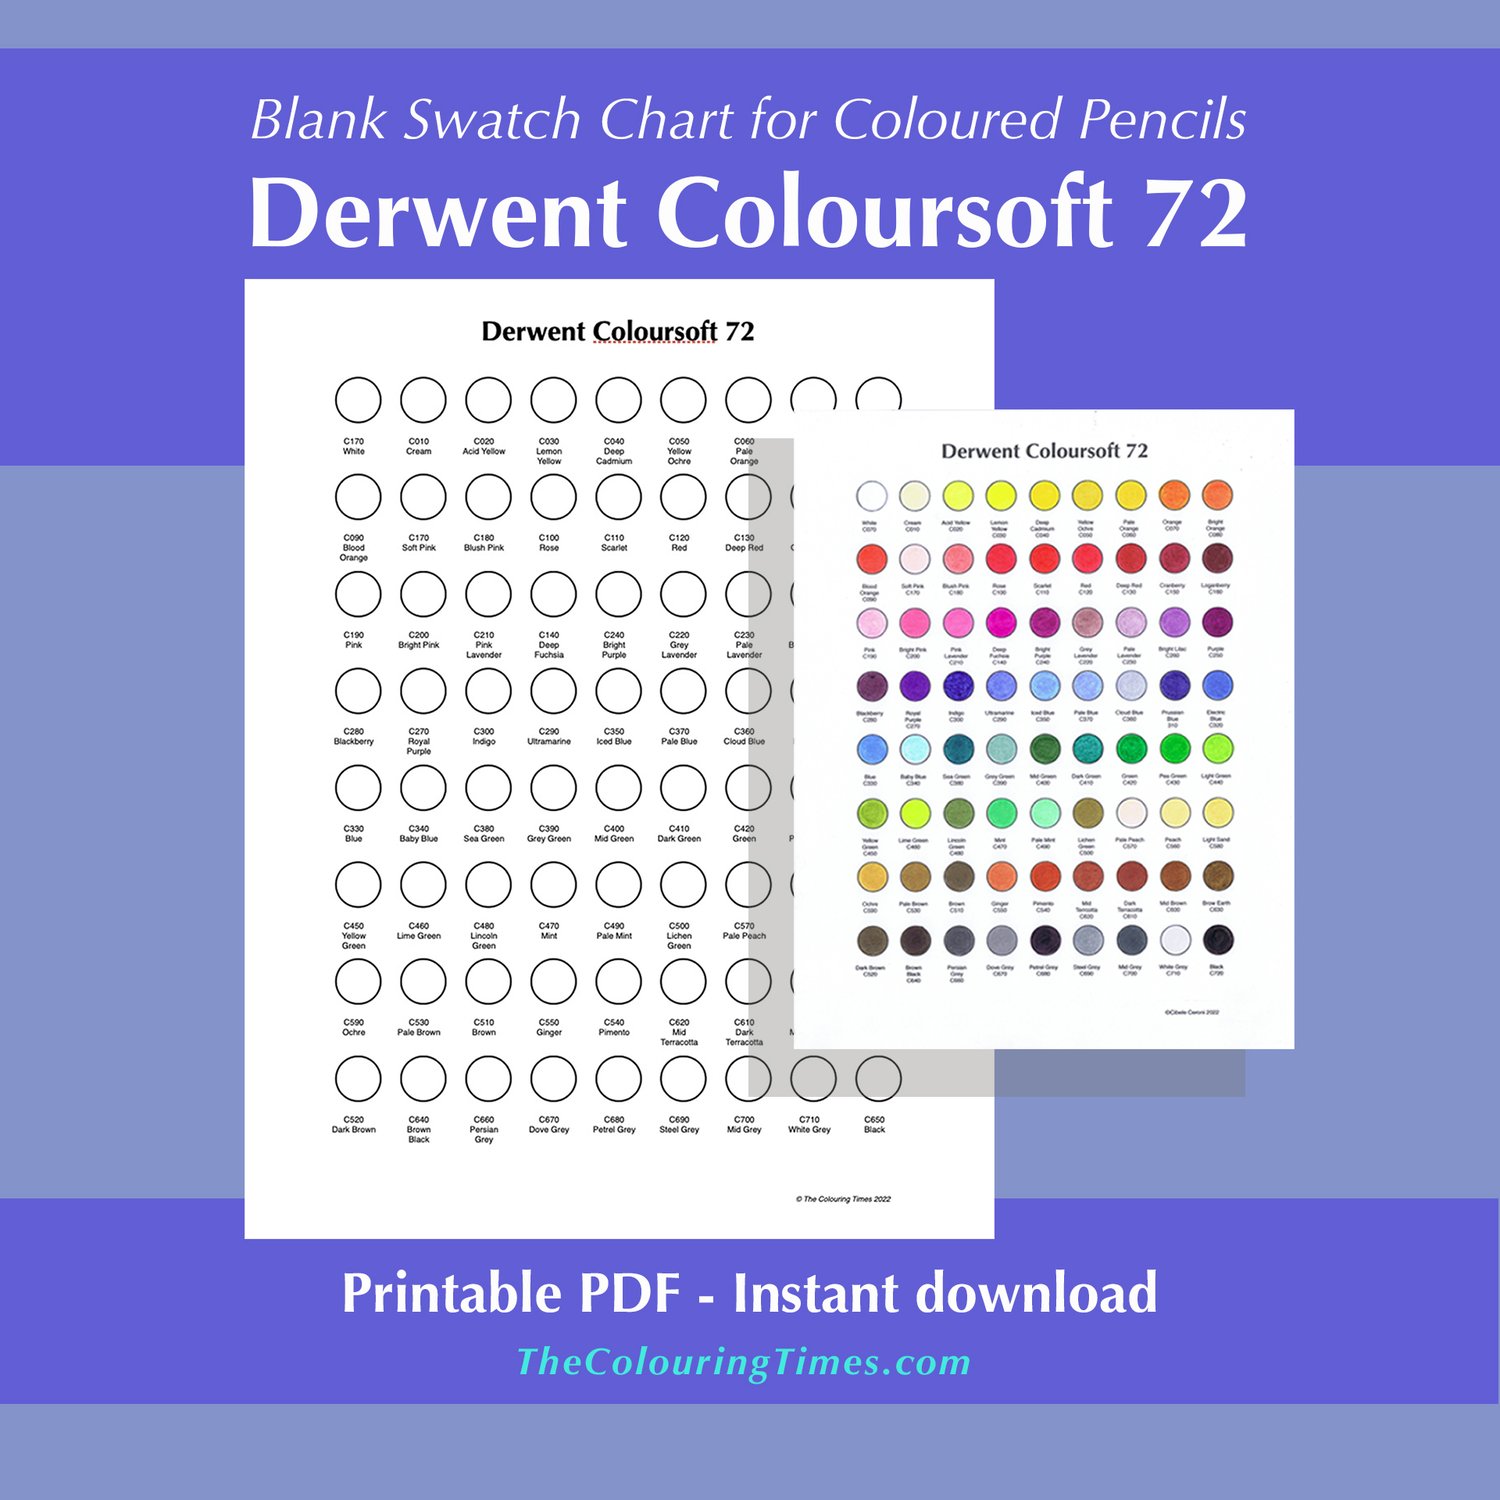 Derwent | Lightfast Pencil Set of 72